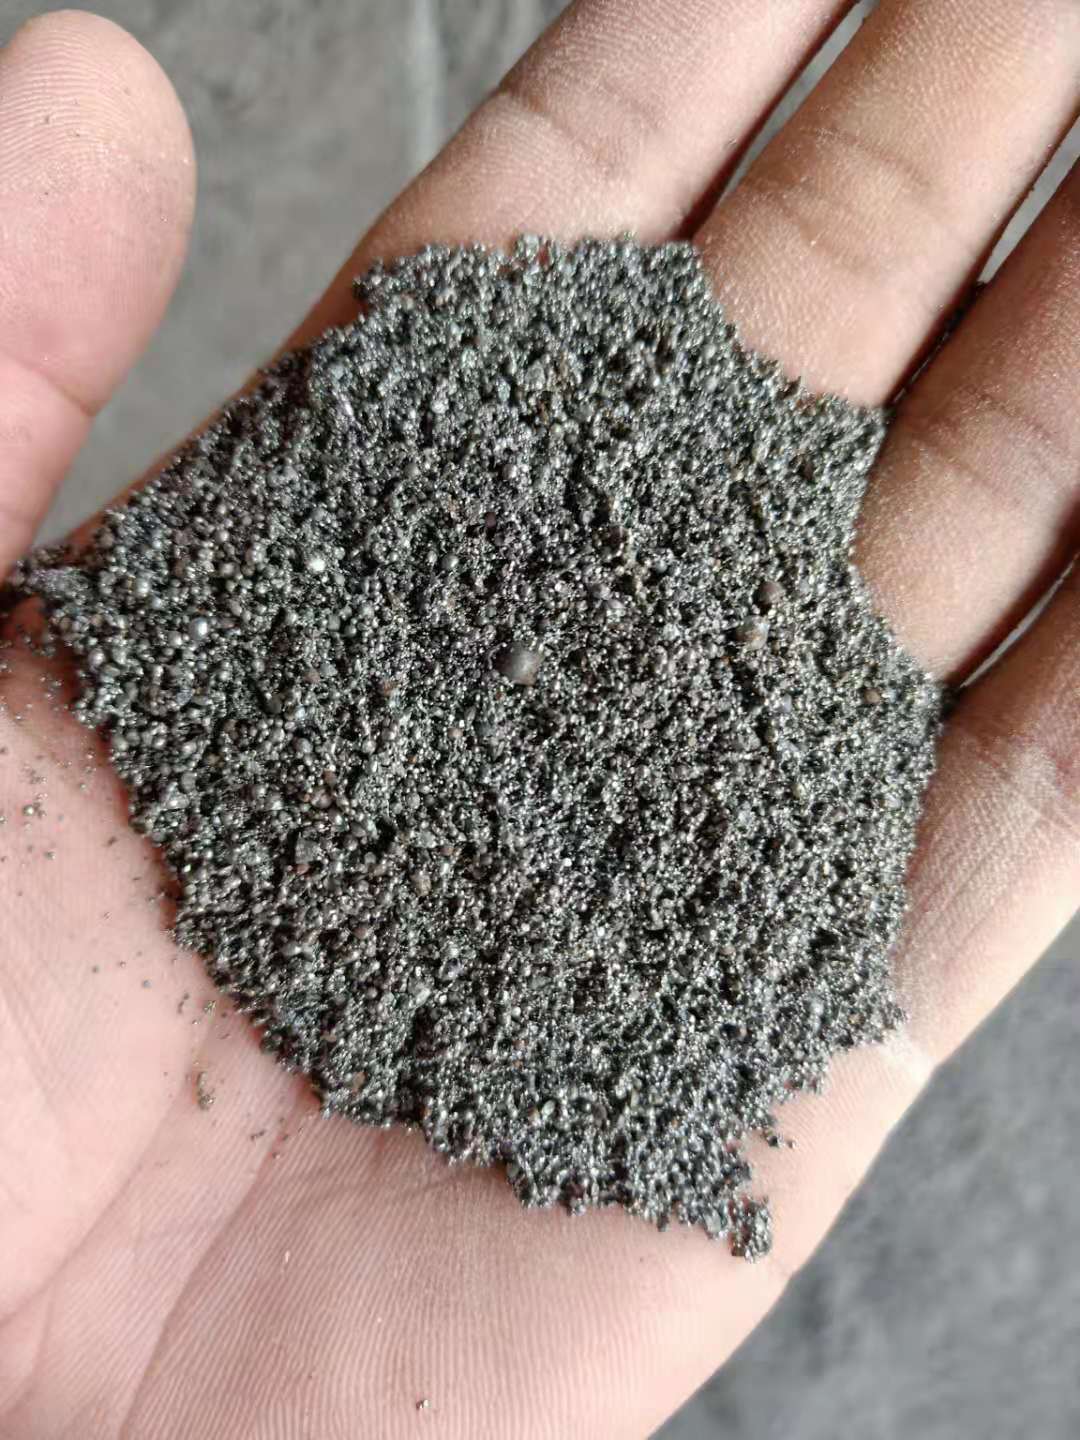 配重材料:铁砂 钢砂 配重铁砂 配重砂